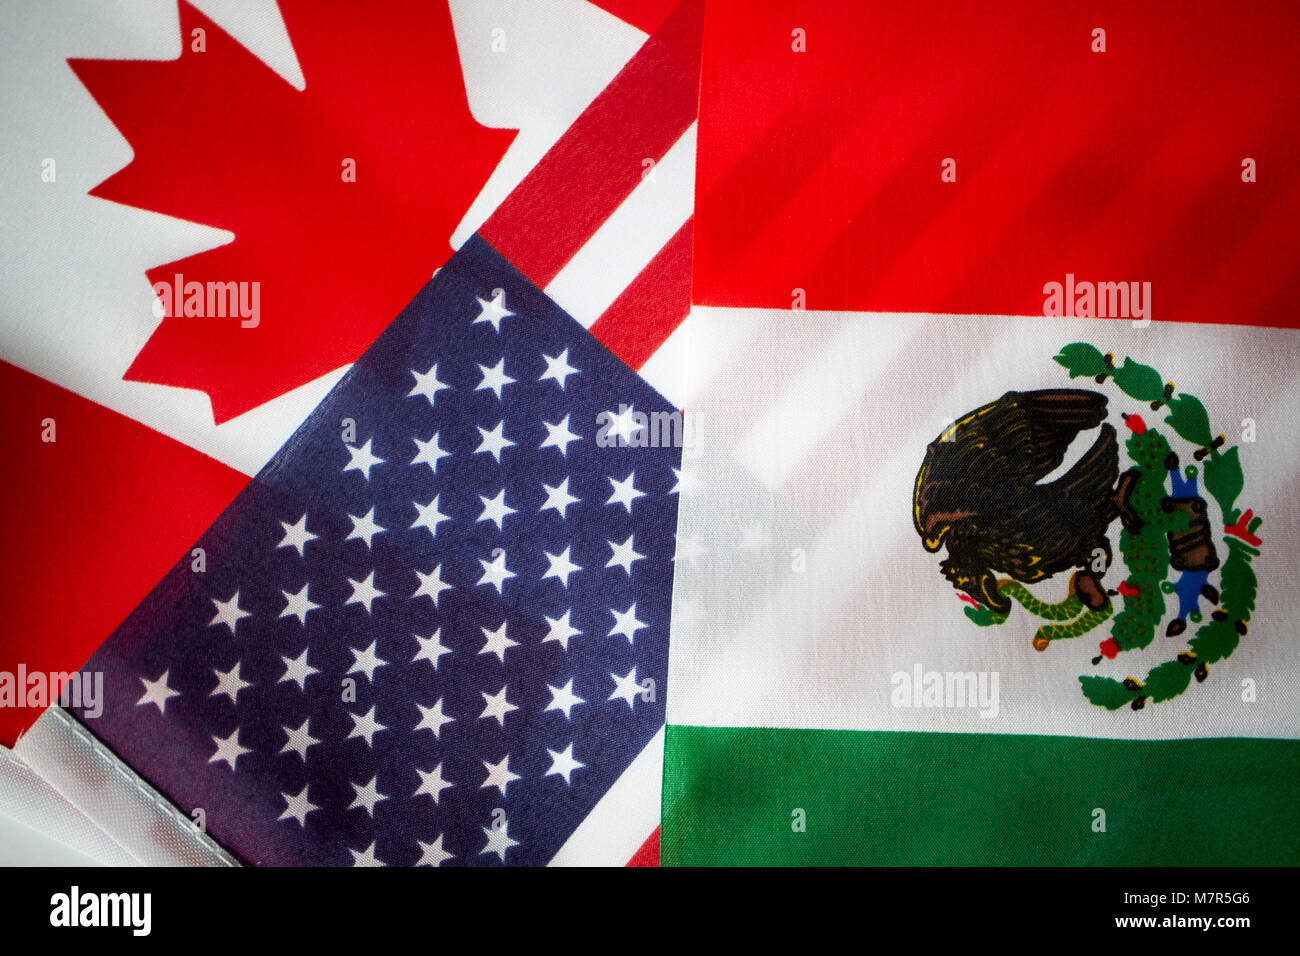 Us Stars und Stripes Fahne mit mexikanischen Flagge und kanadische Maple Leaf nafta-Flags Stockfoto